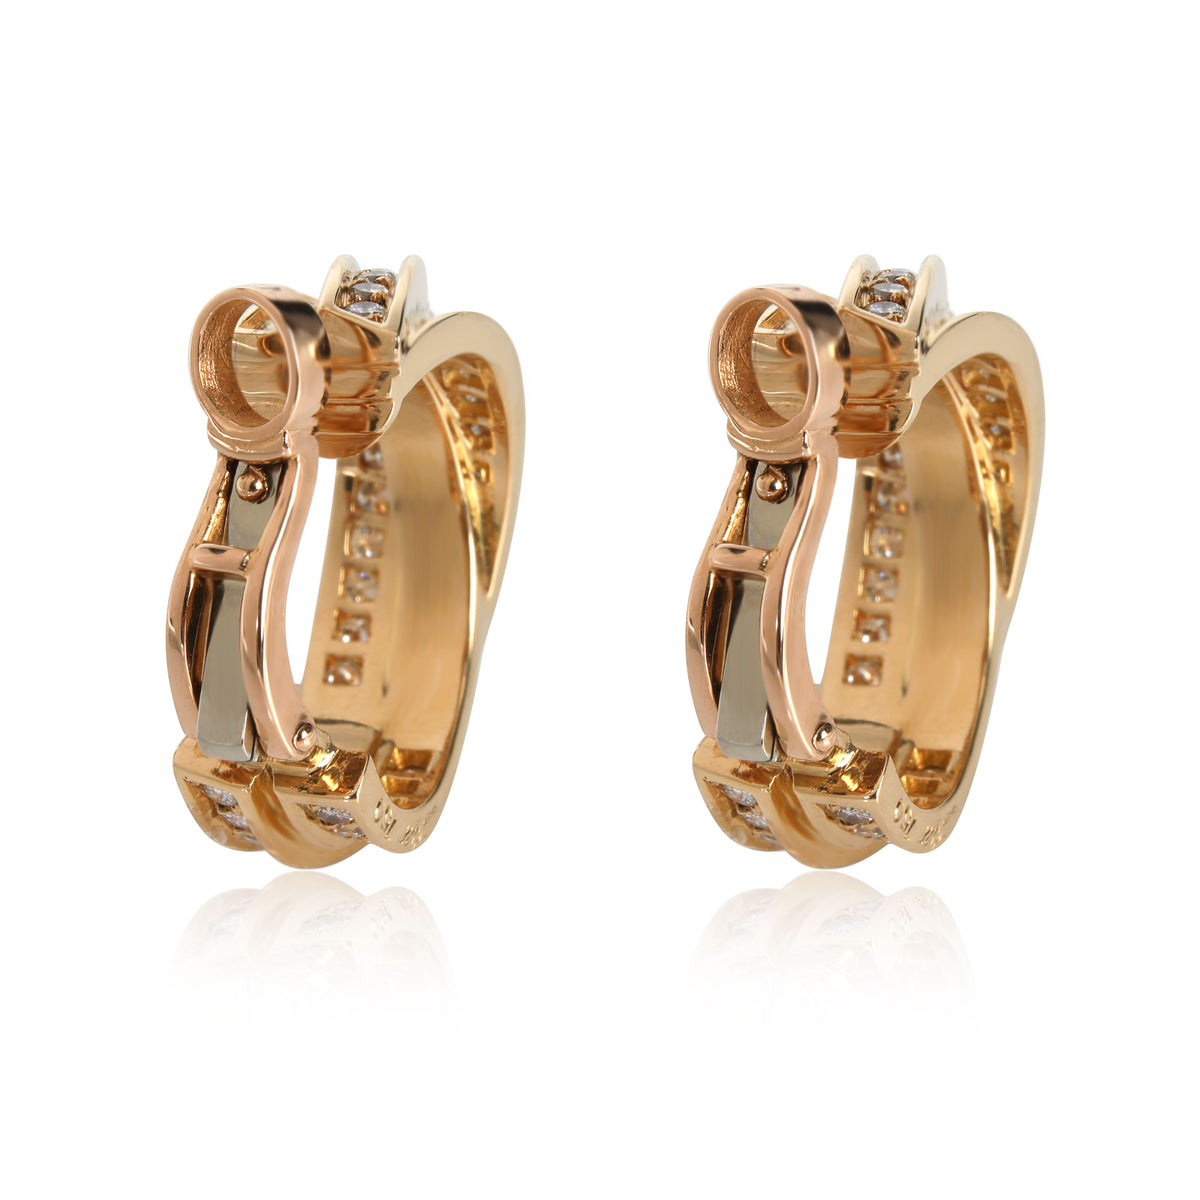 Cartier Trinity Diamond Earrings in 18kt Yellow Gold 1.8 CTW